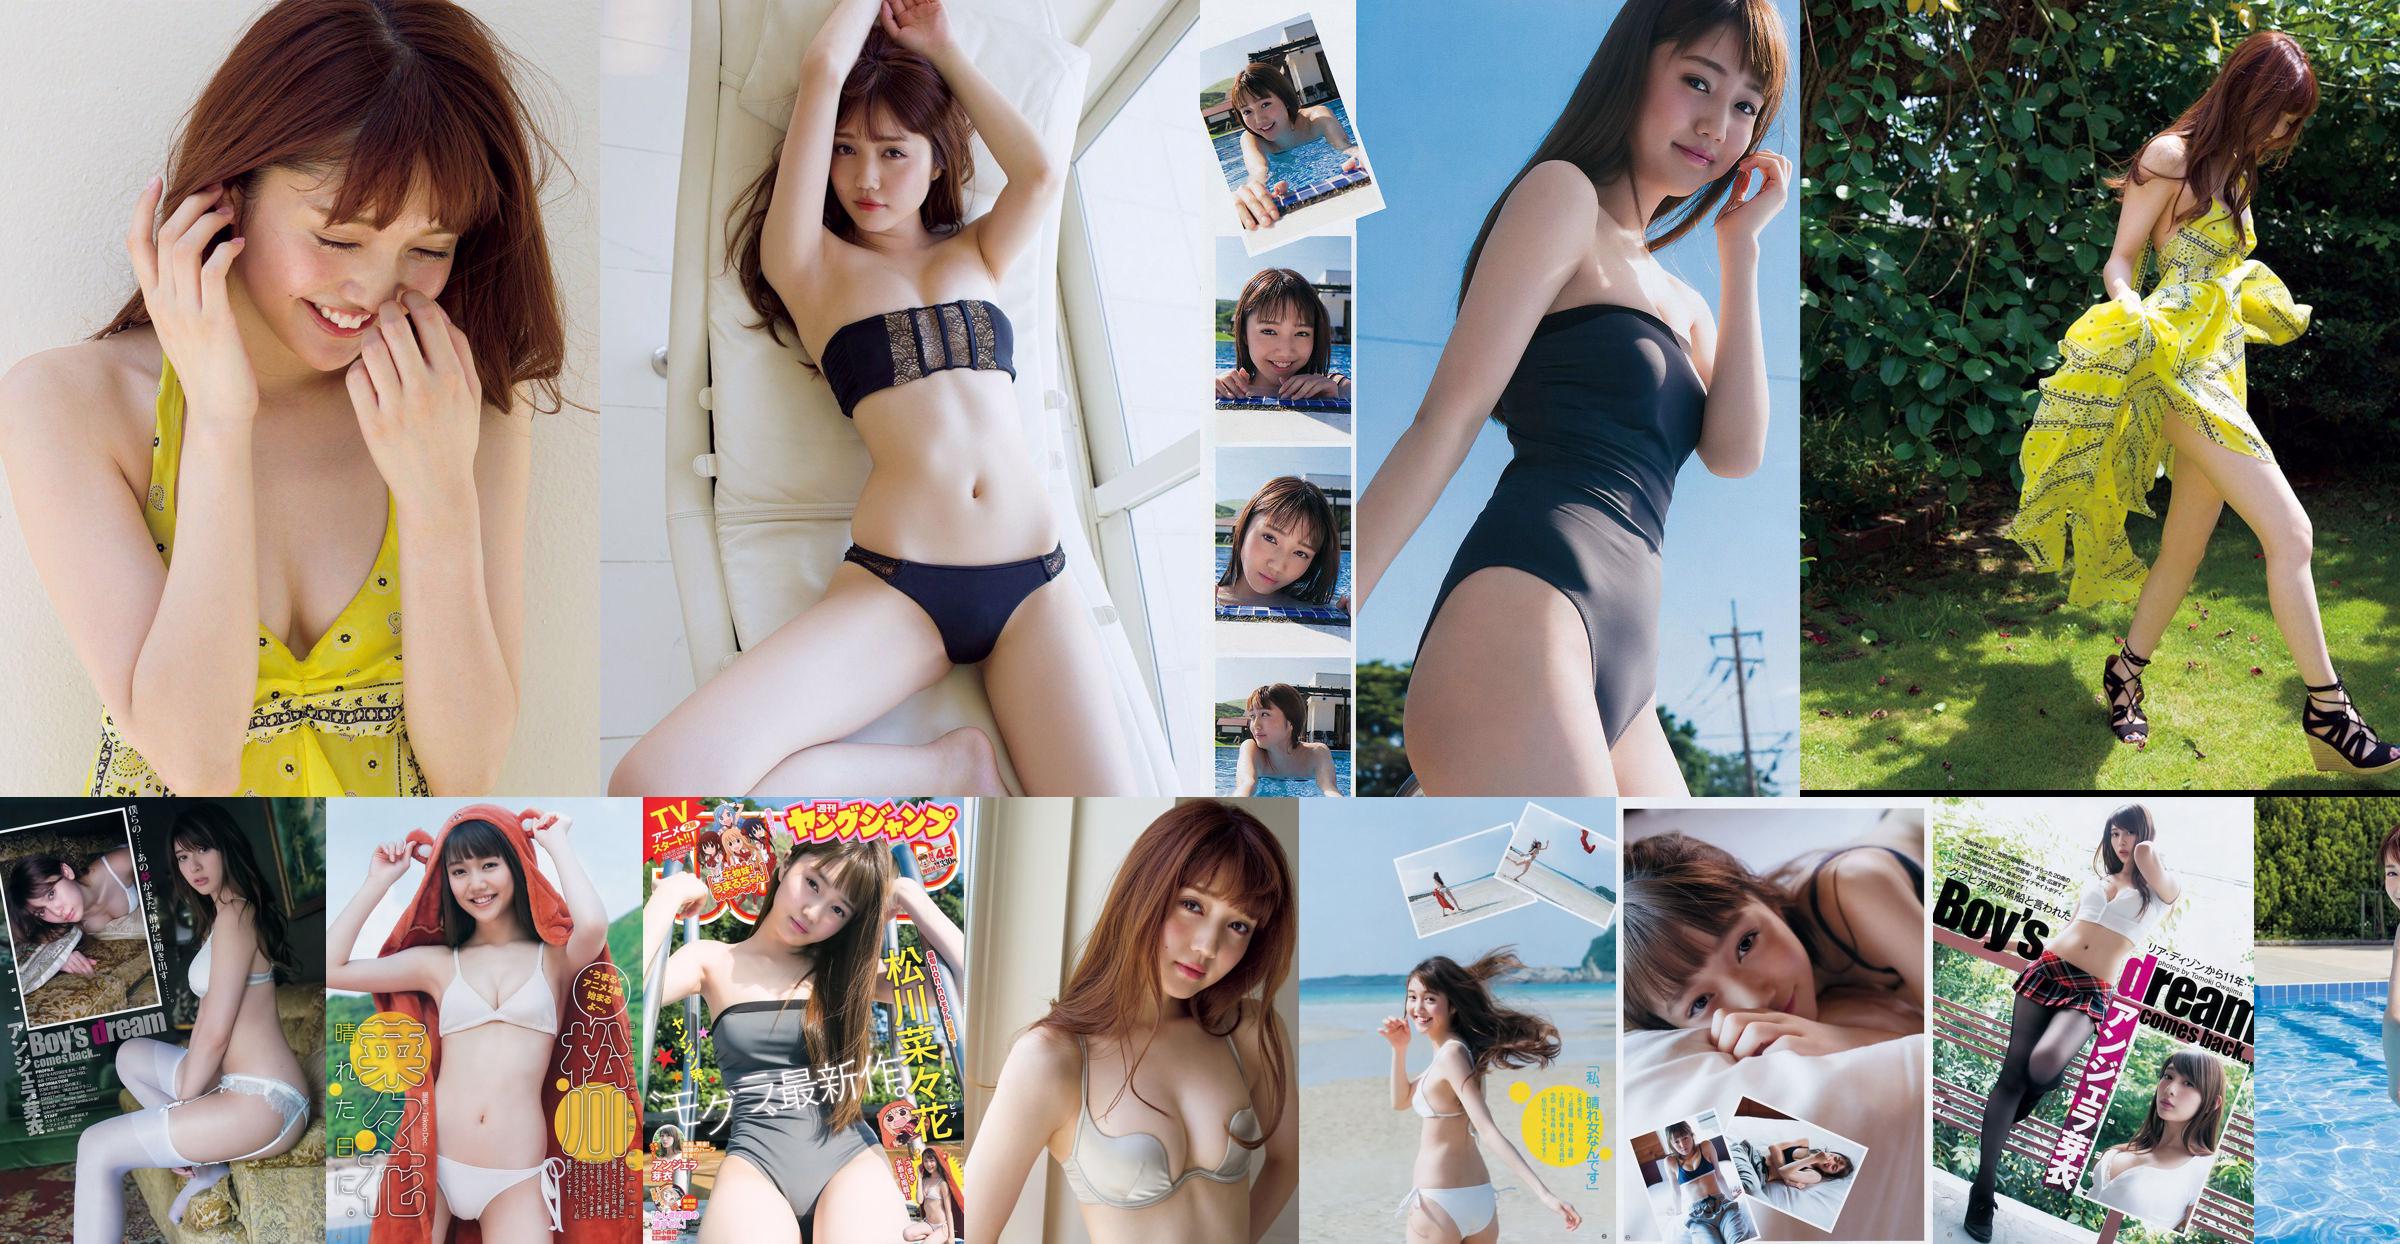 [星期五]松川奈奈<<流行的模特和泳裝日期Kiken 20歲的氣味（帶視頻）>>照片 No.22428c 第3頁